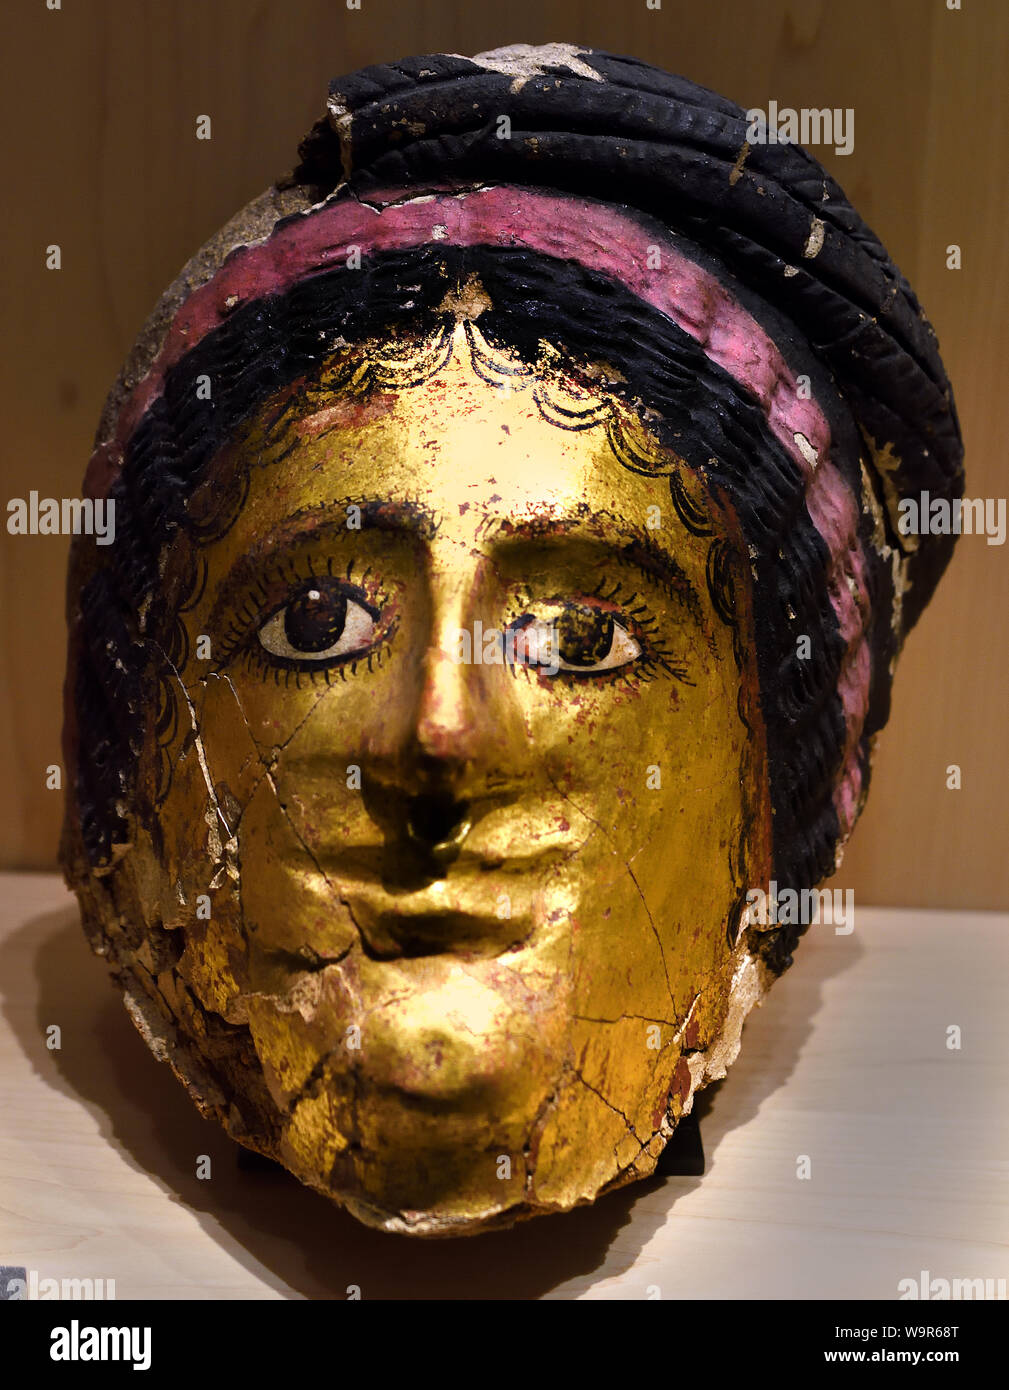 Maske der Mumie 1. Jahrhundert v. Chr. - 2. Jahrhundert n. Chr. Ägypten Theben Malte und gold Karton, Ägypten, Ägyptische. Stockfoto